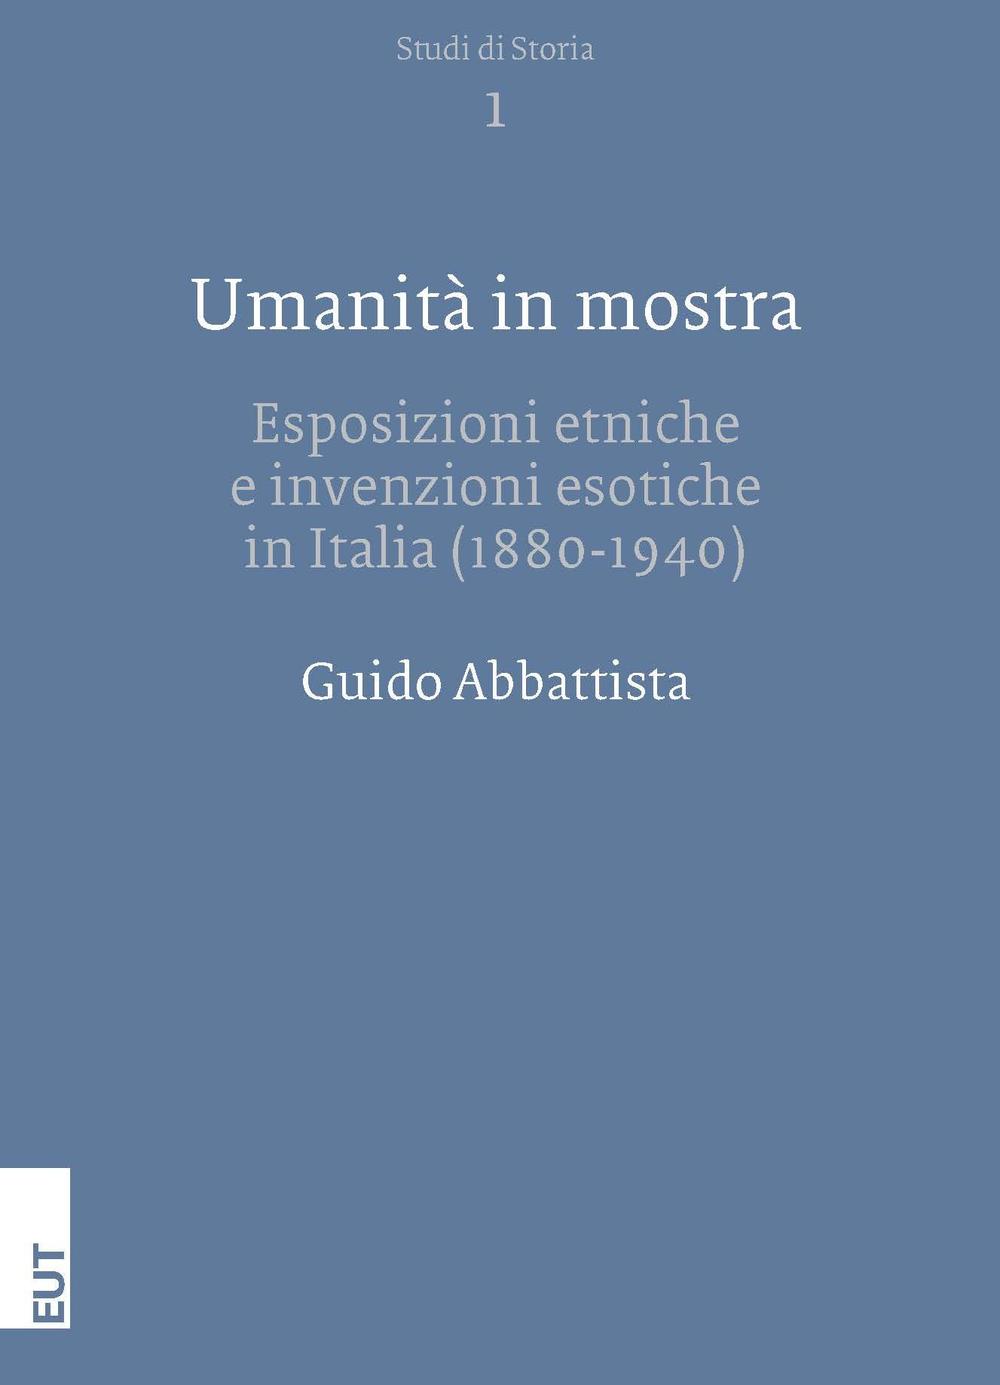 Umanità in mostra. Esposizioni etniche e invenzioni esotiche in Italia (1880-1940)